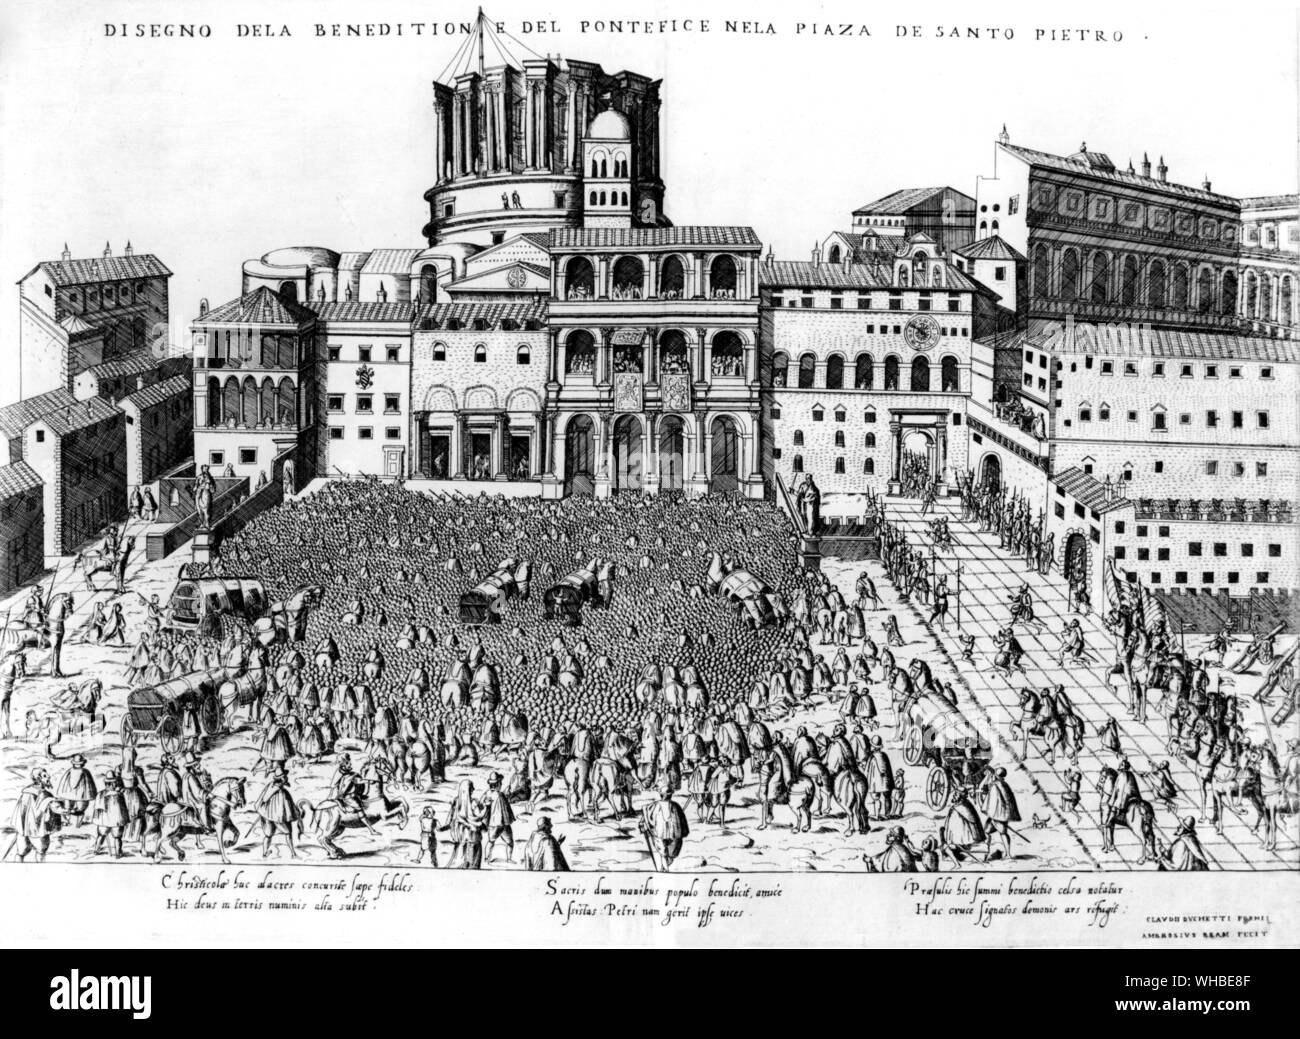 Benedizione papale in Piazza San Pietro a Roma - Incisione del 1575 Giubileo da Speculum Romanae Magnificentiae" Foto Stock